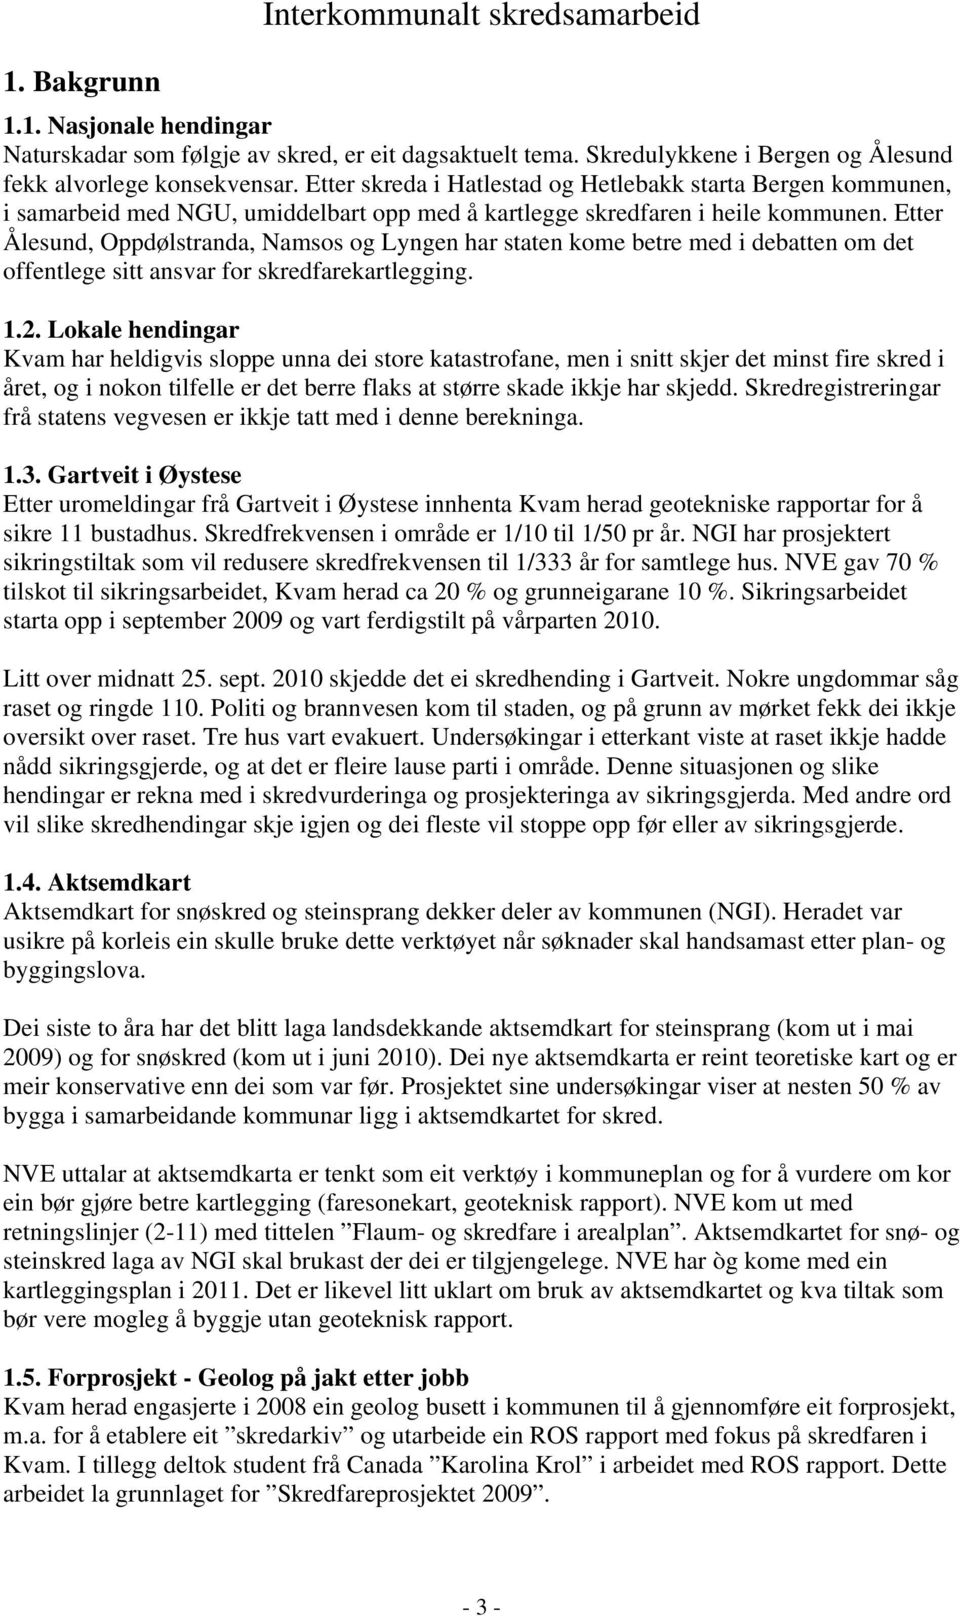 Etter Ålesund, Oppdølstranda, Namsos og Lyngen har staten kome betre med i debatten om det offentlege sitt ansvar for skredfarekartlegging. 1.2.